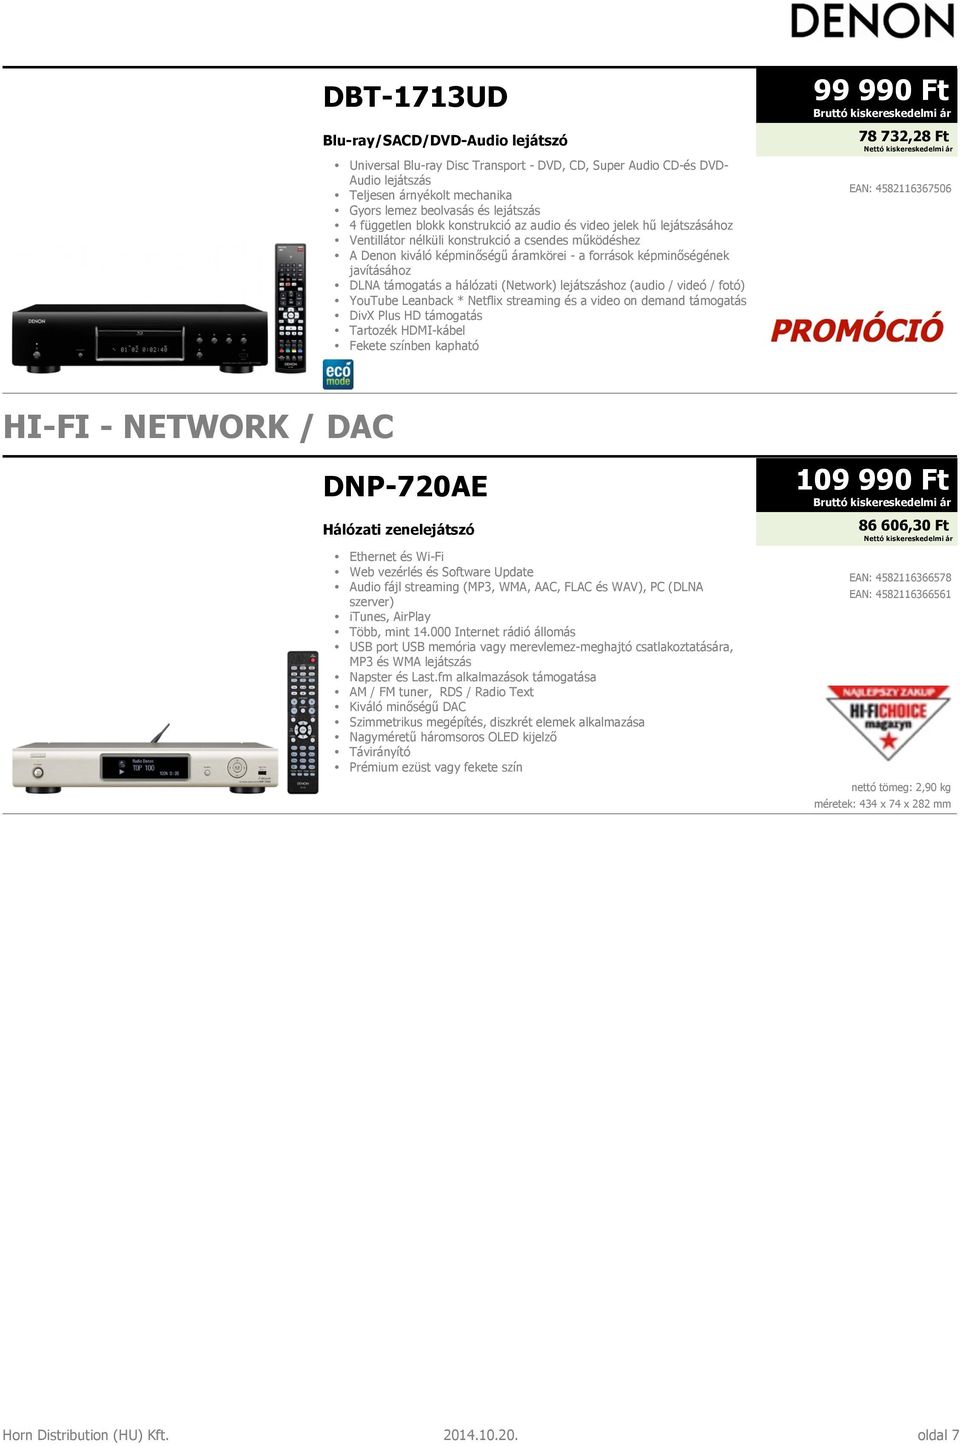 DLNA támogatás a hálózati (Network) lejátszáshoz (audio / videó / fotó) YouTube Leanback * Netflix streaming és a video on demand támogatás DivX Plus HD támogatás Tartozék HDMI-kábel Fekete színben